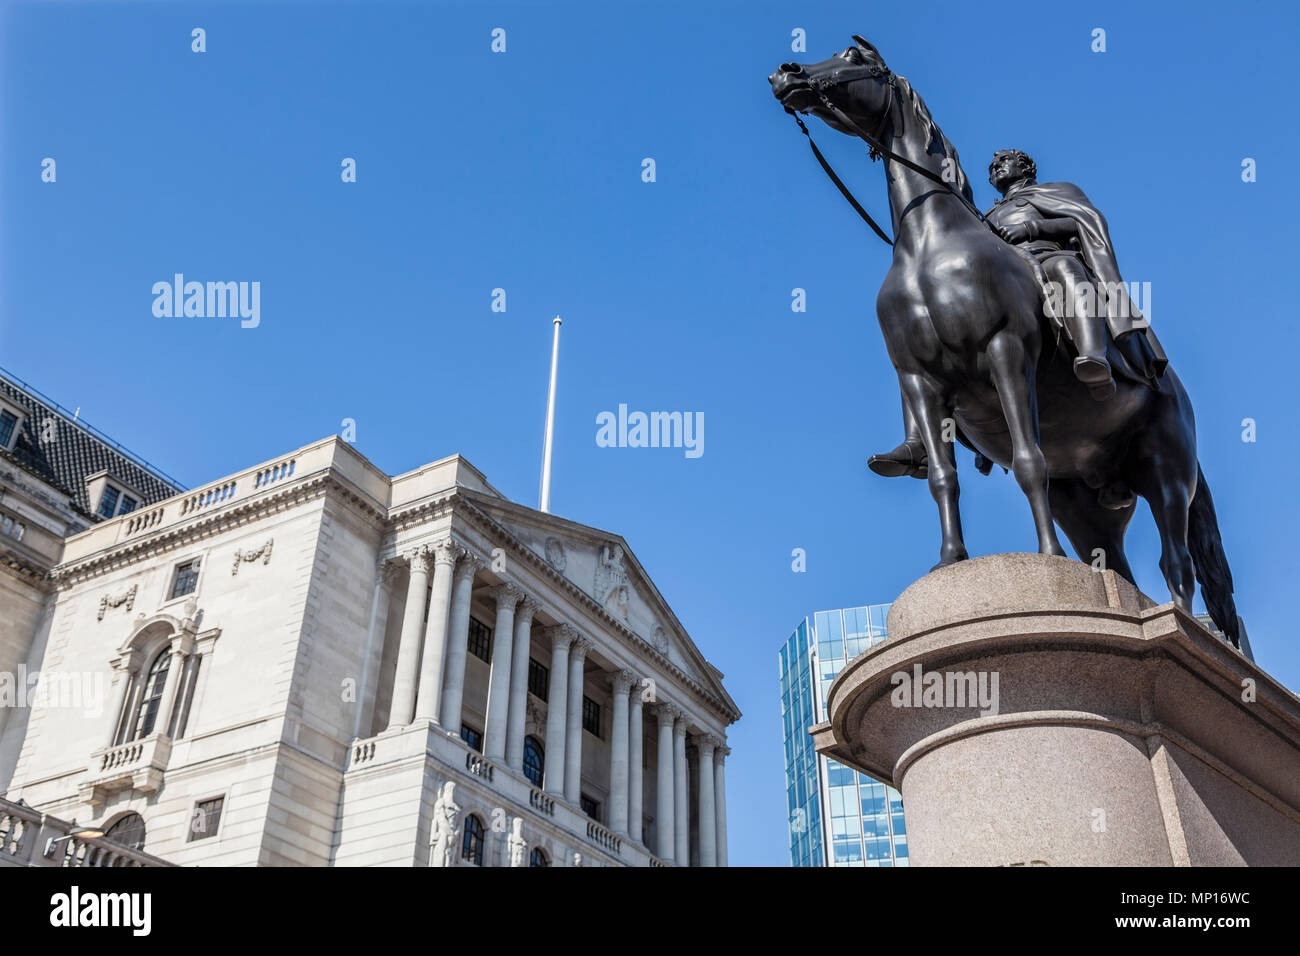 Banco de Inglaterra en Threadneedle Street, en el corazón del distrito financiero de Londres, con el Duque de Wellington estatua en primer plano Foto de stock